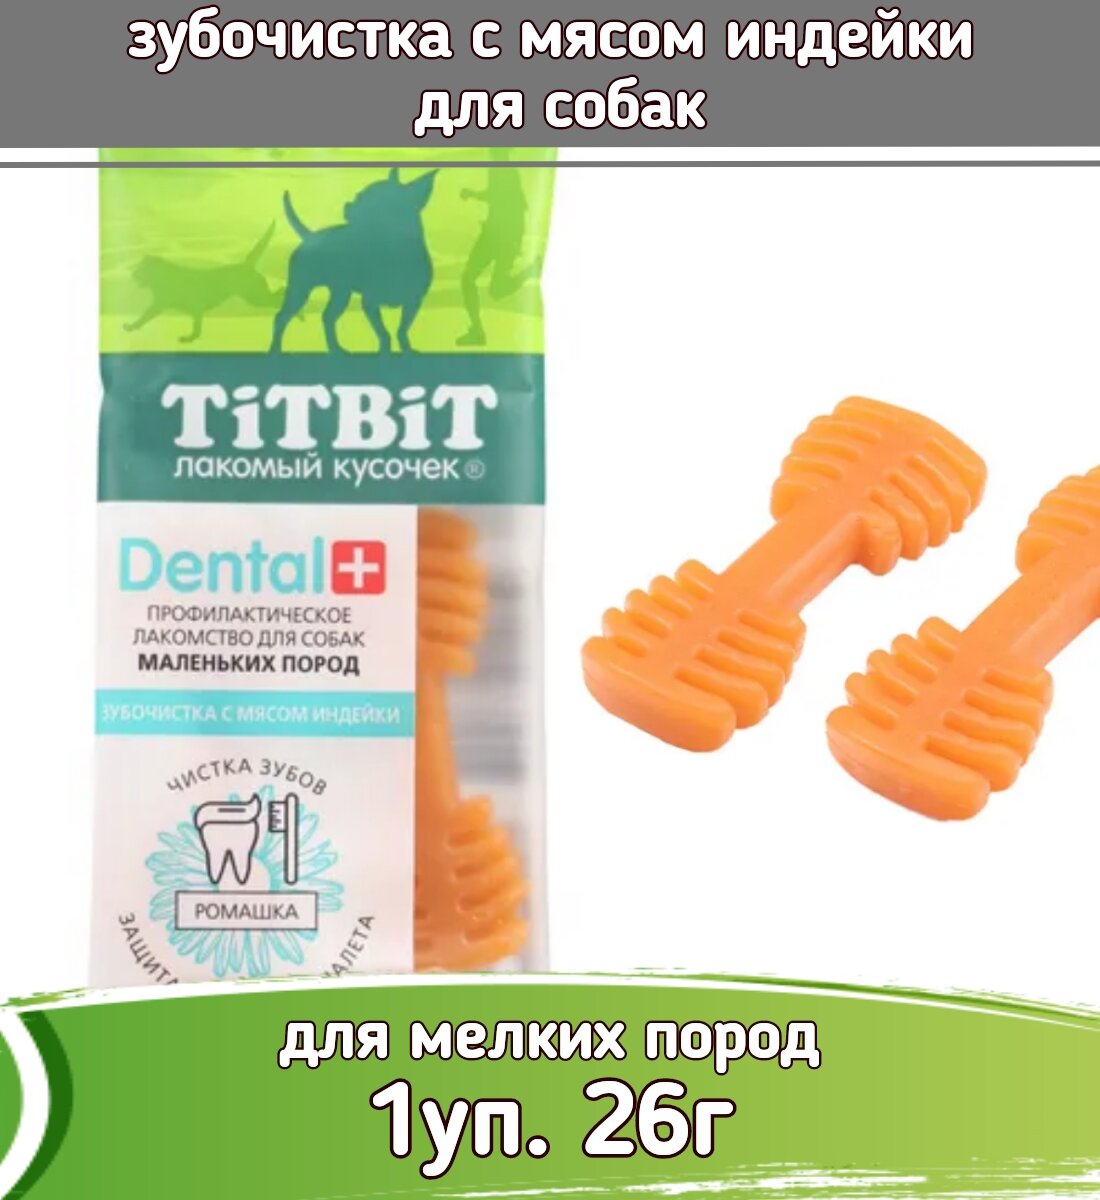 TiTBiT DENTAL + 0,026кг лакомство зубочистка с мясом индейки для собак маленьких пород